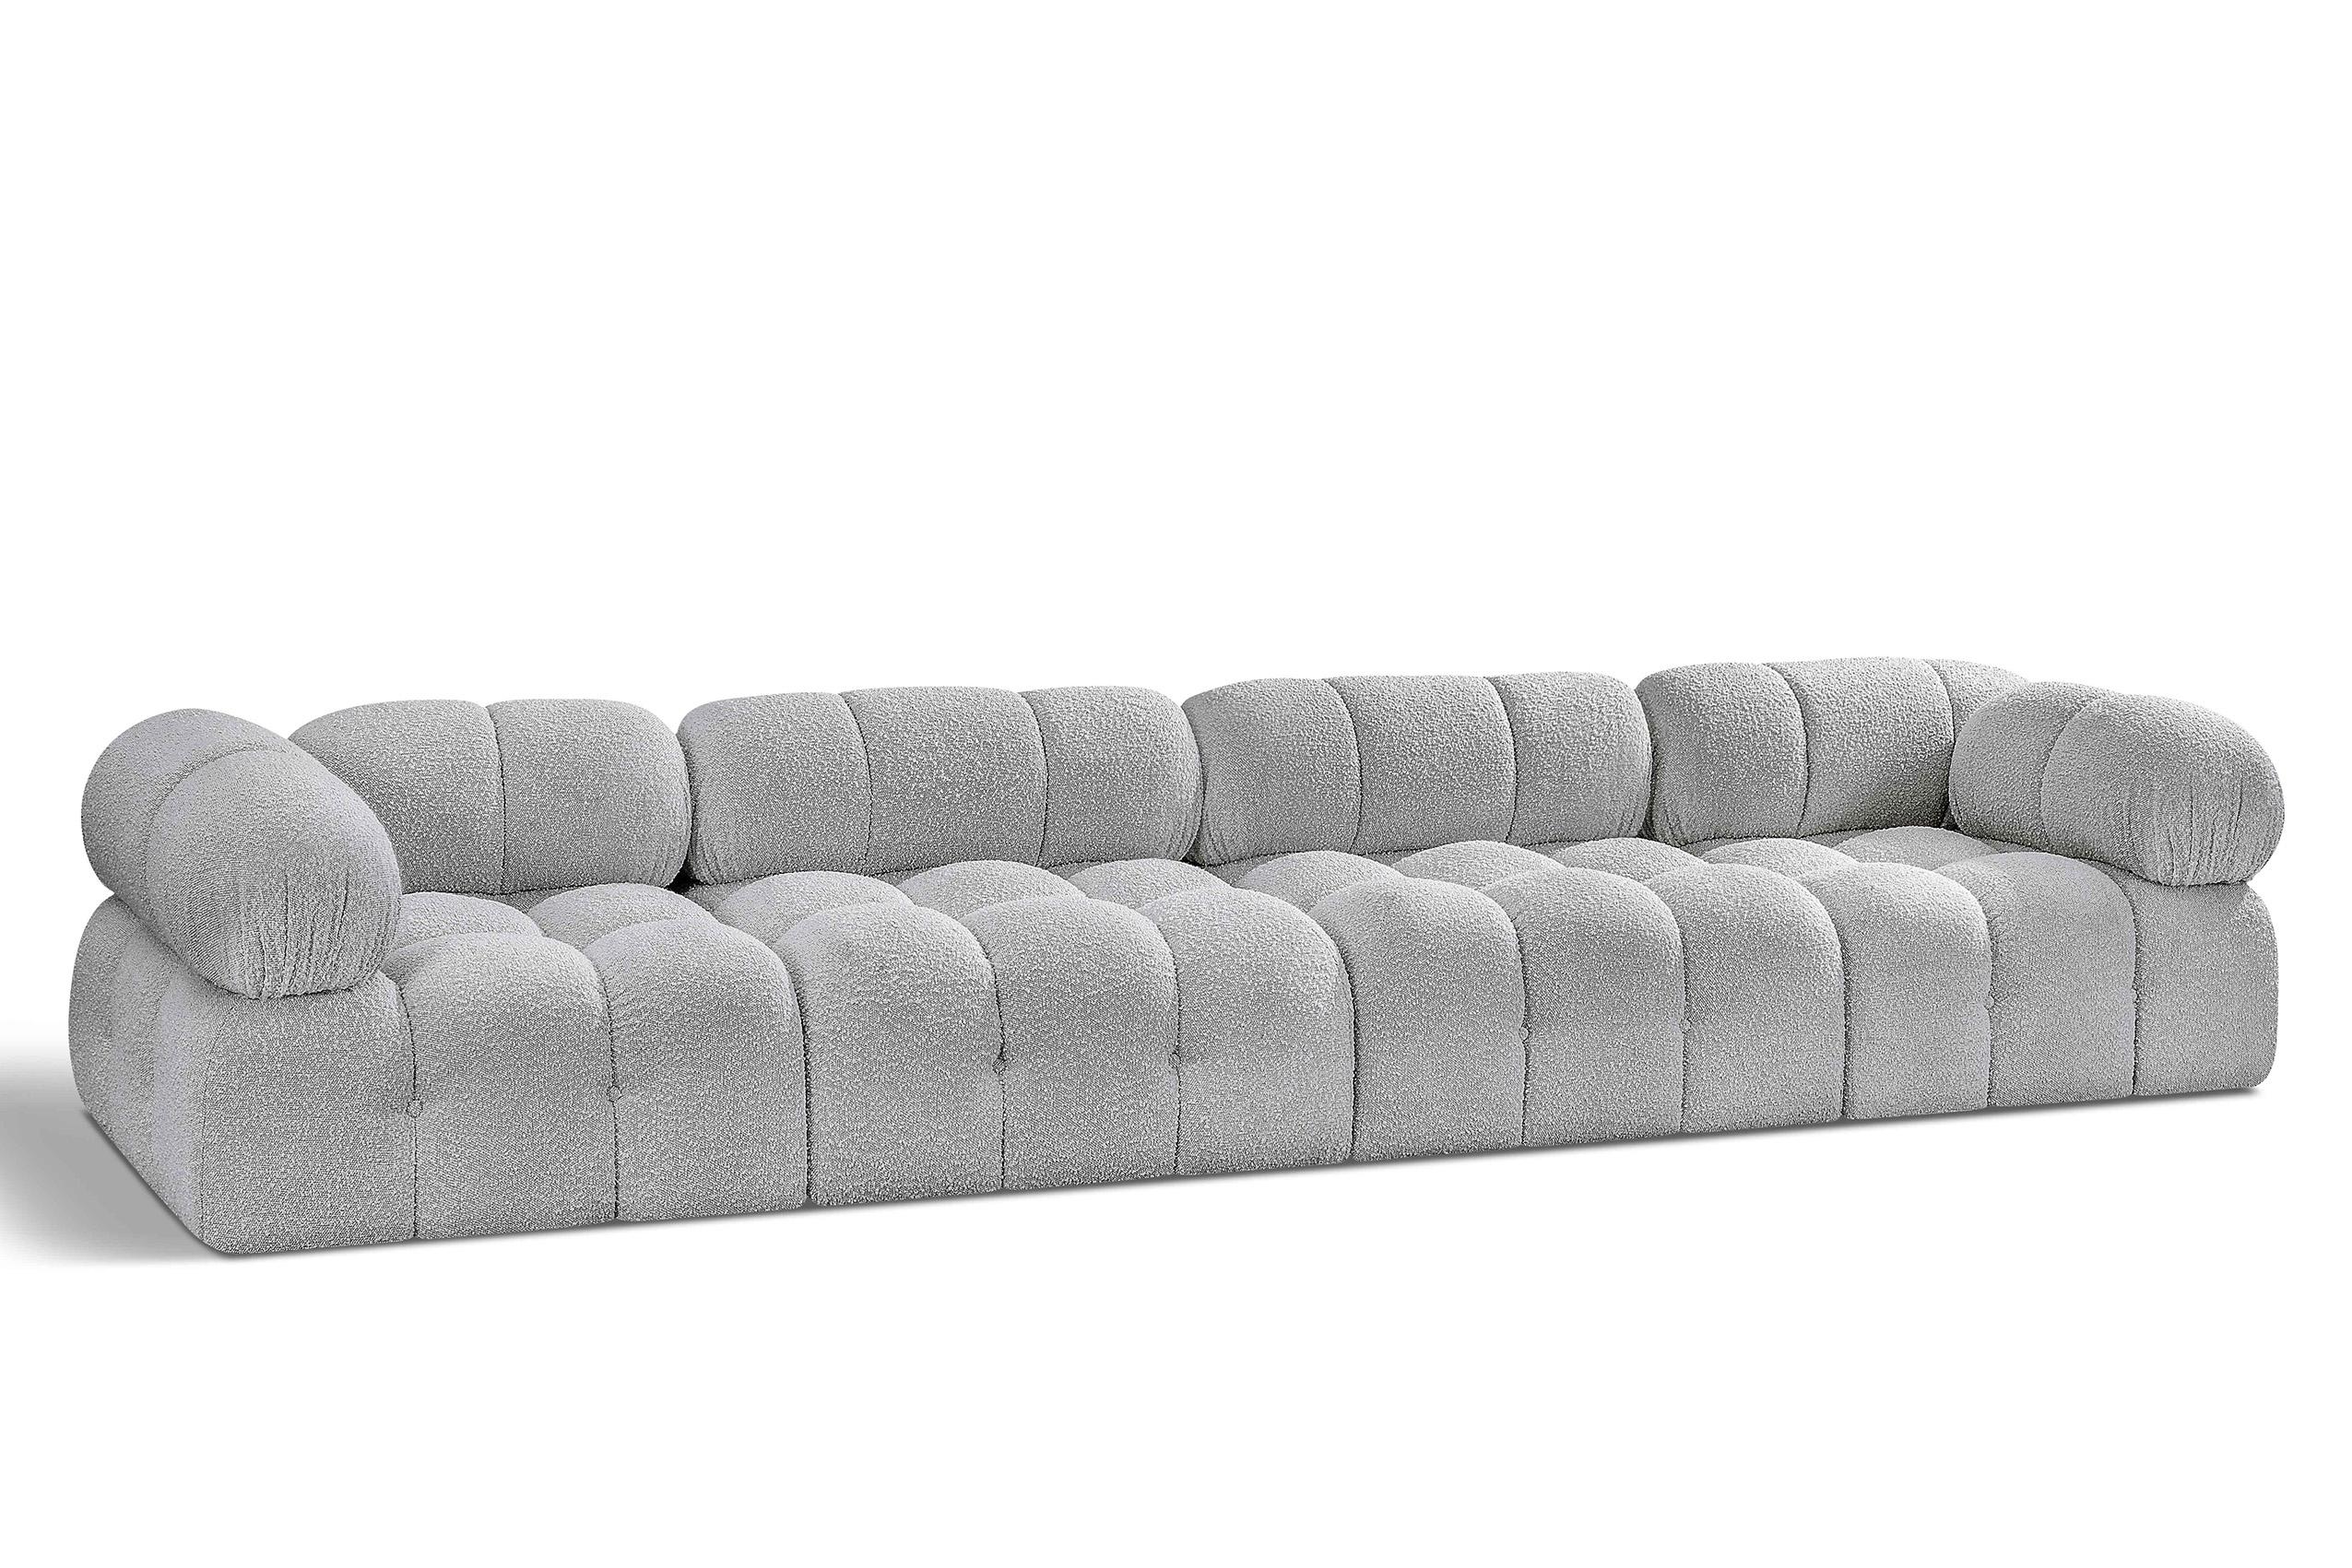 Contemporary, Modern Modular Sofa AMES 611Grey-S136A 611Grey-S136A in Gray 